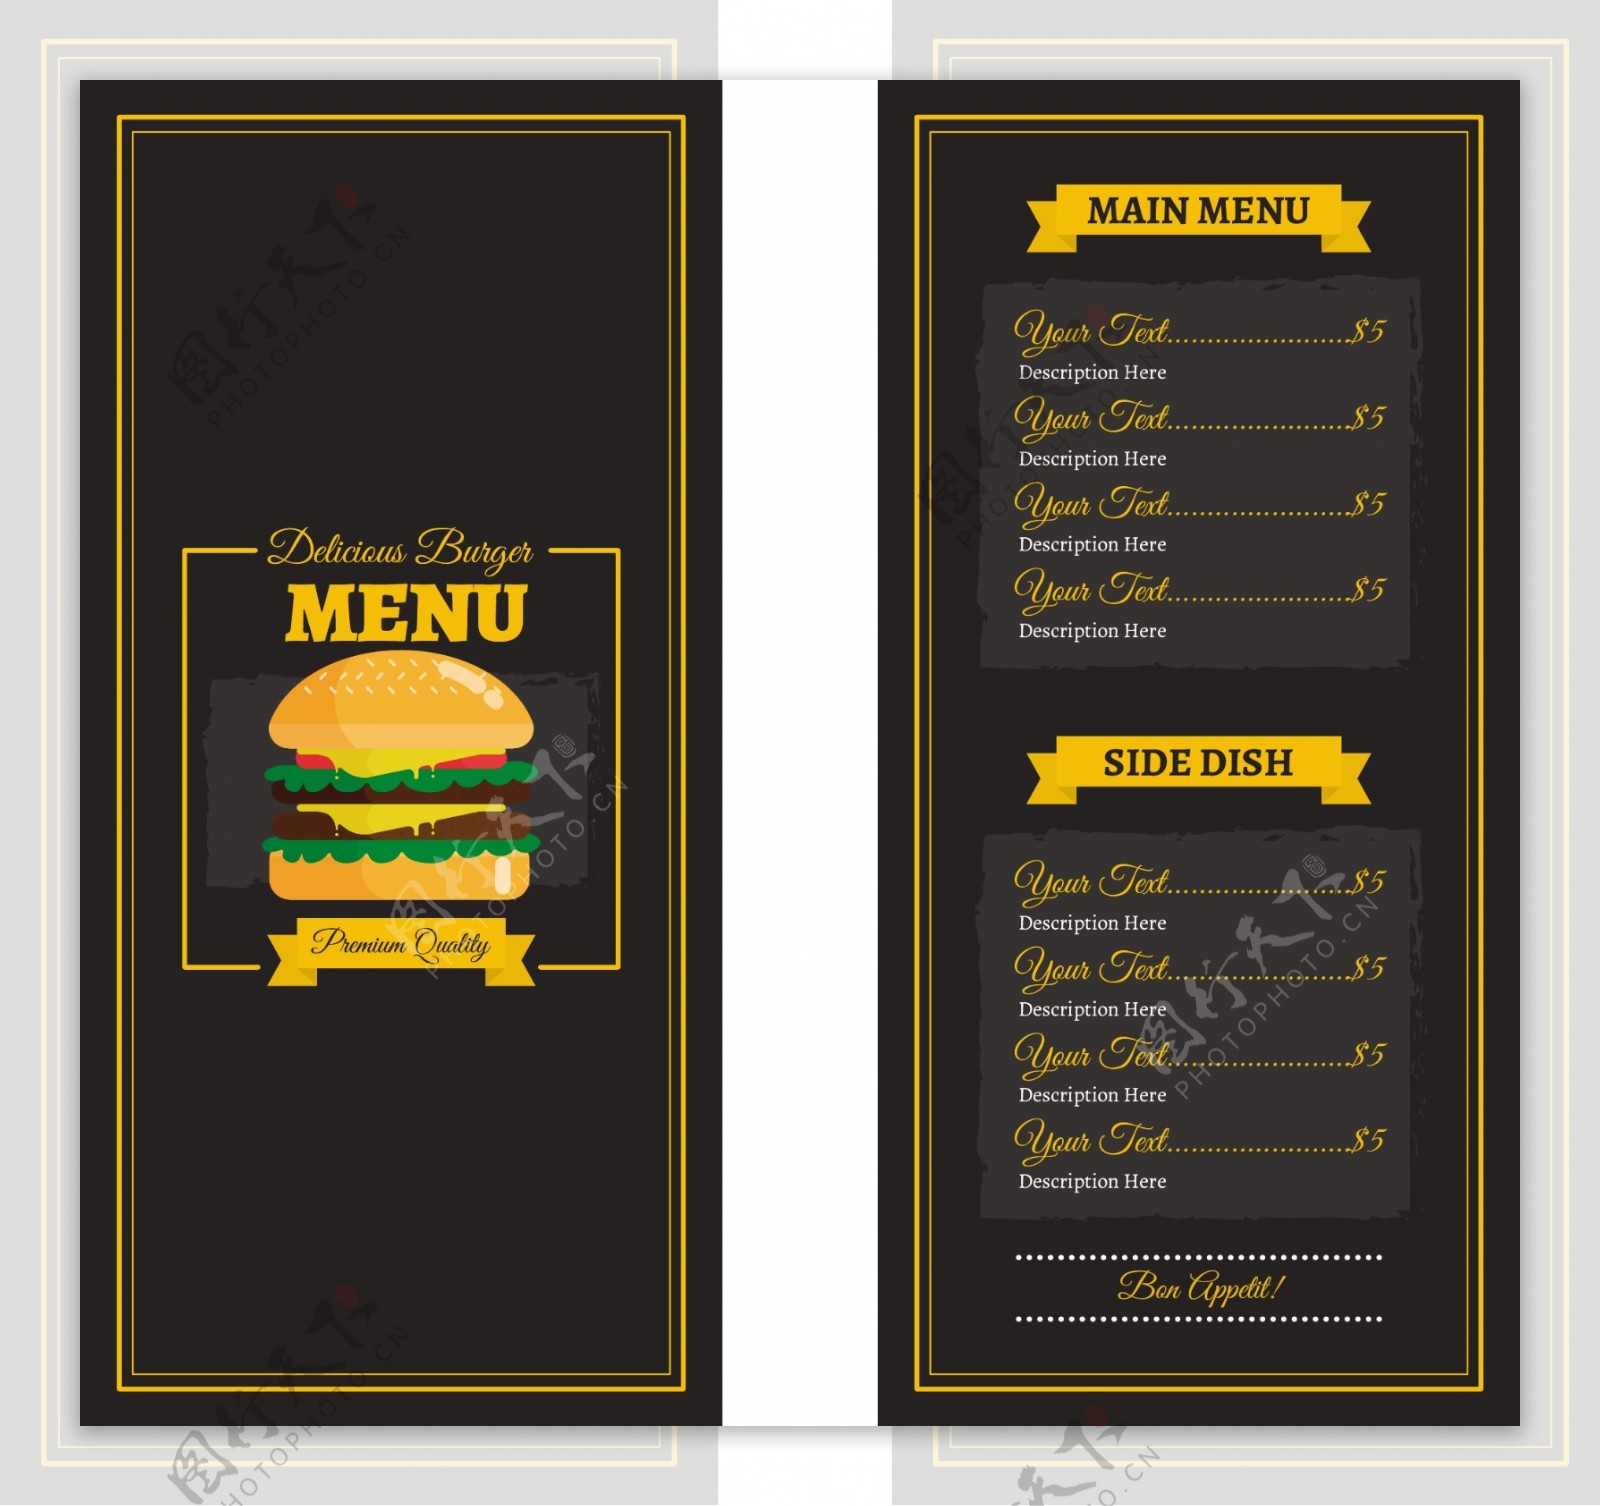 汉堡菜单平面设计黑暗模板